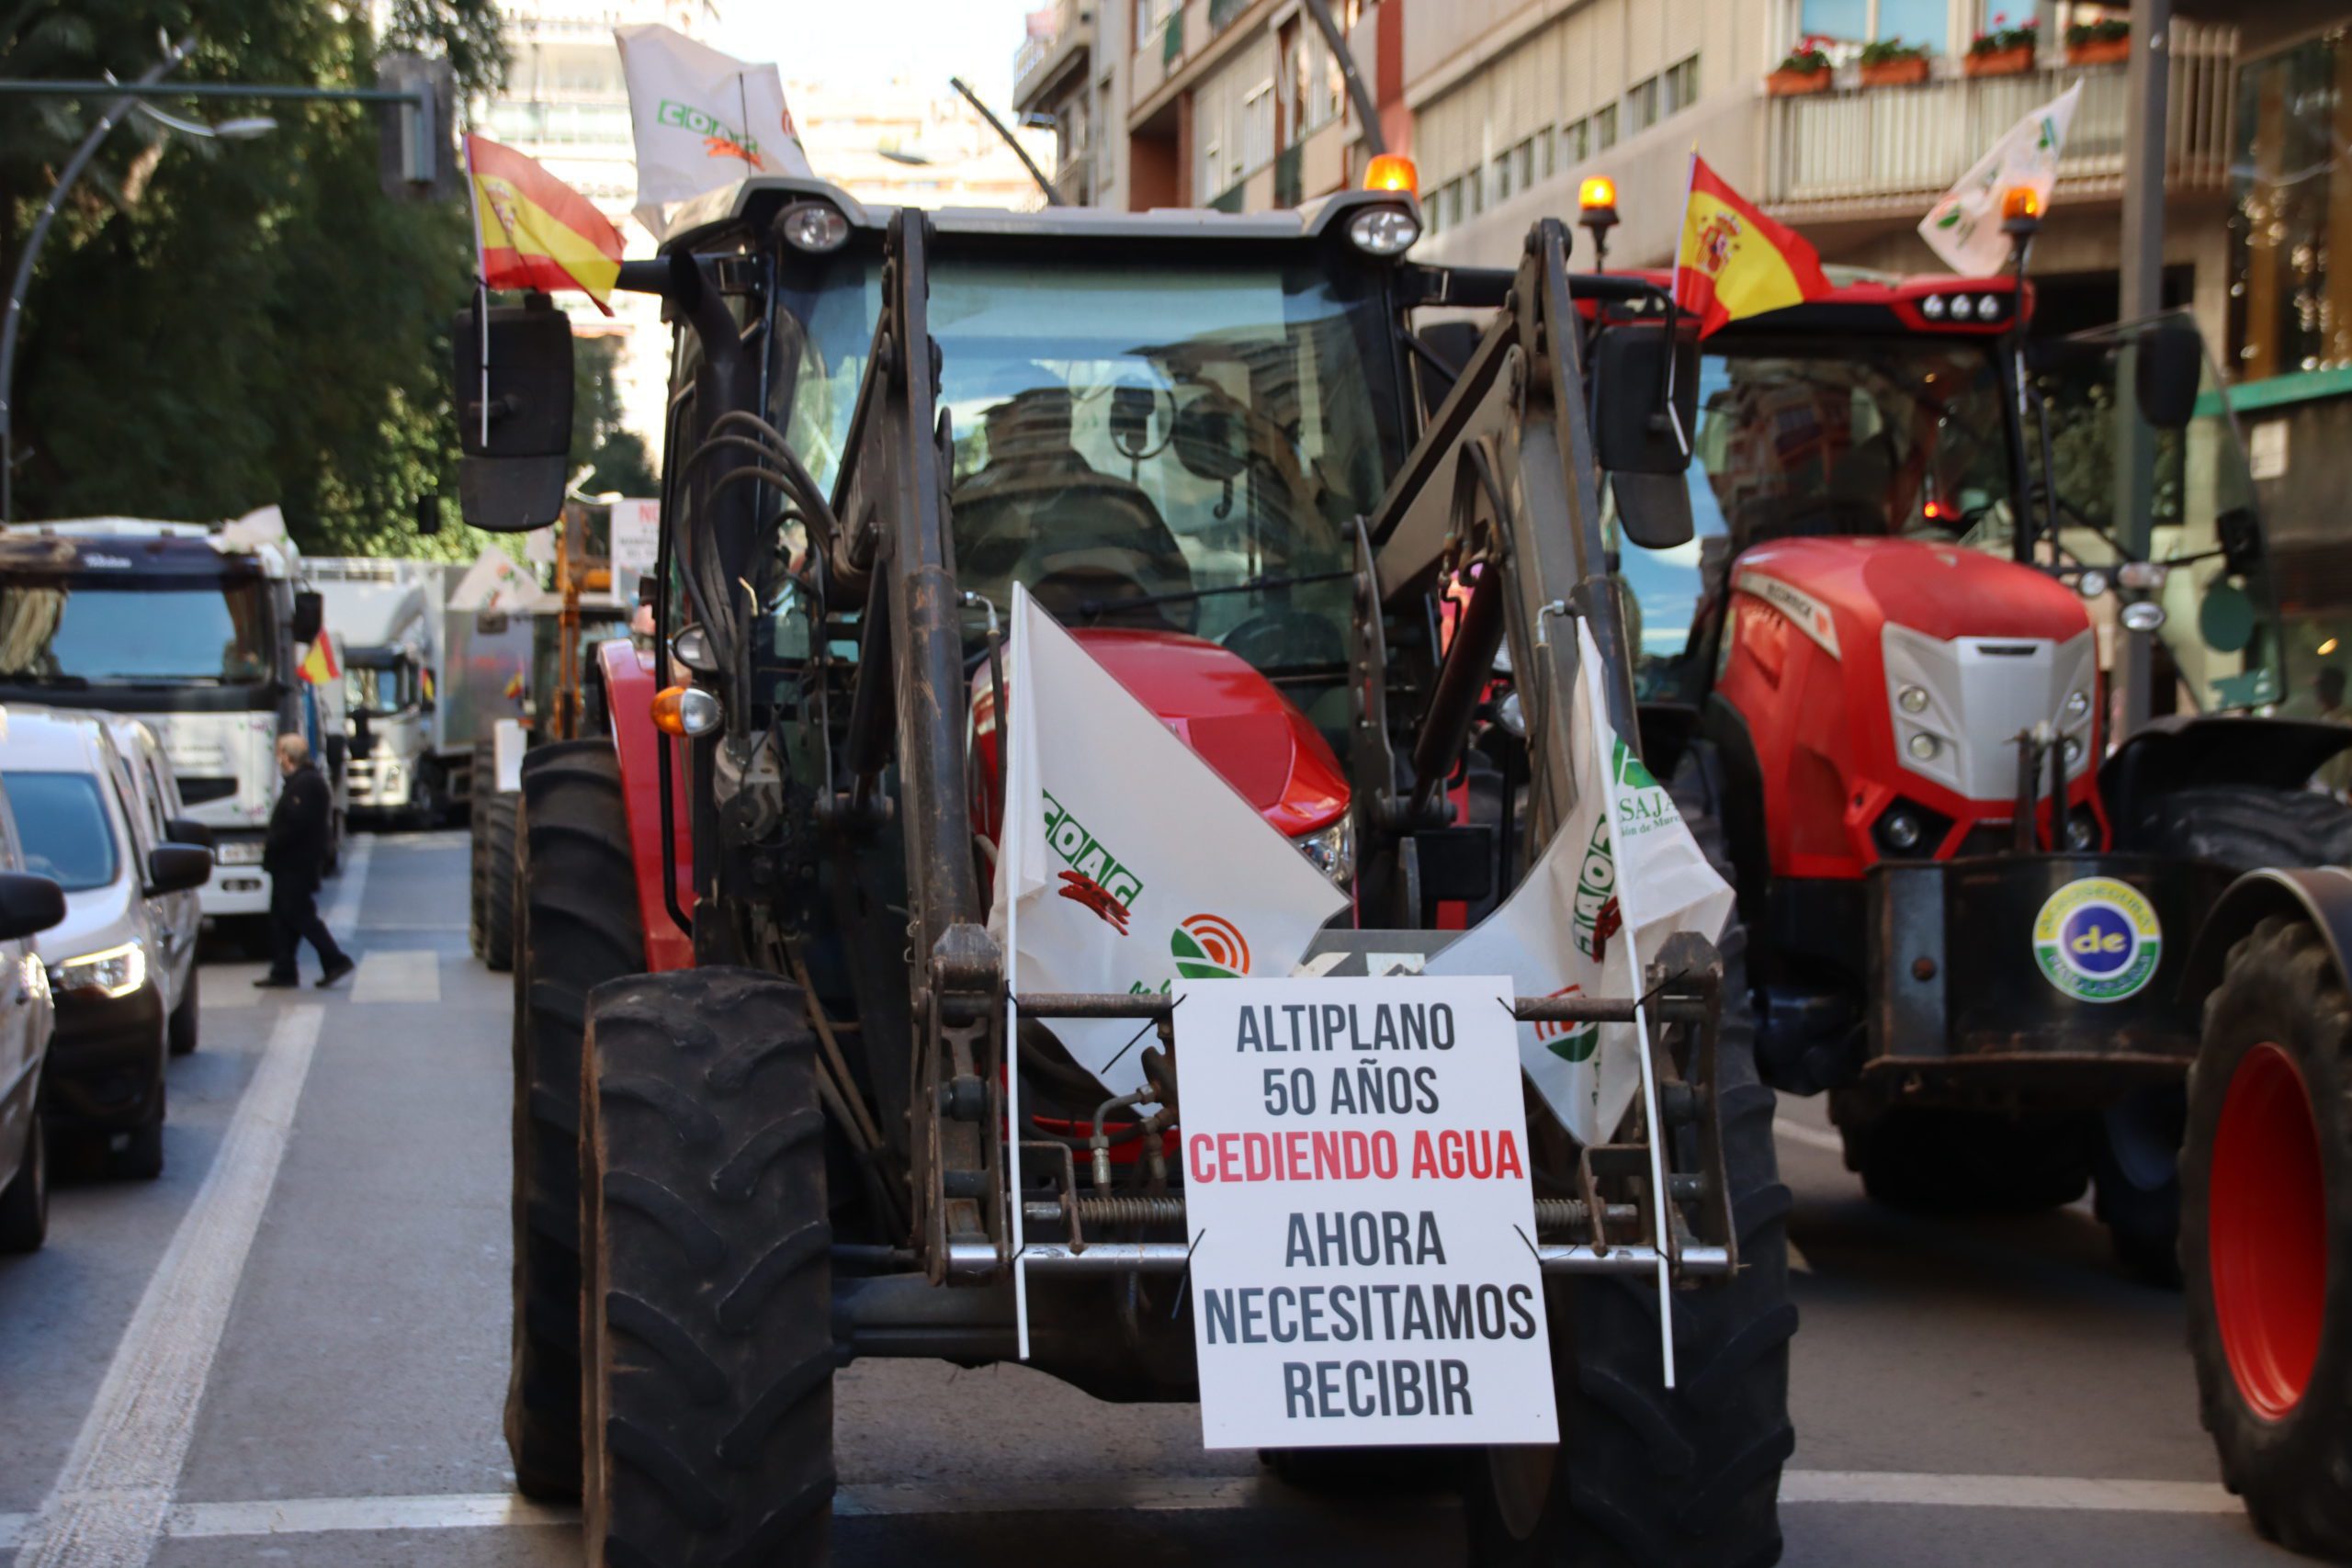 El Altiplano encabeza en Murcia la manifestación “Por el futuro y respeto para el campo”